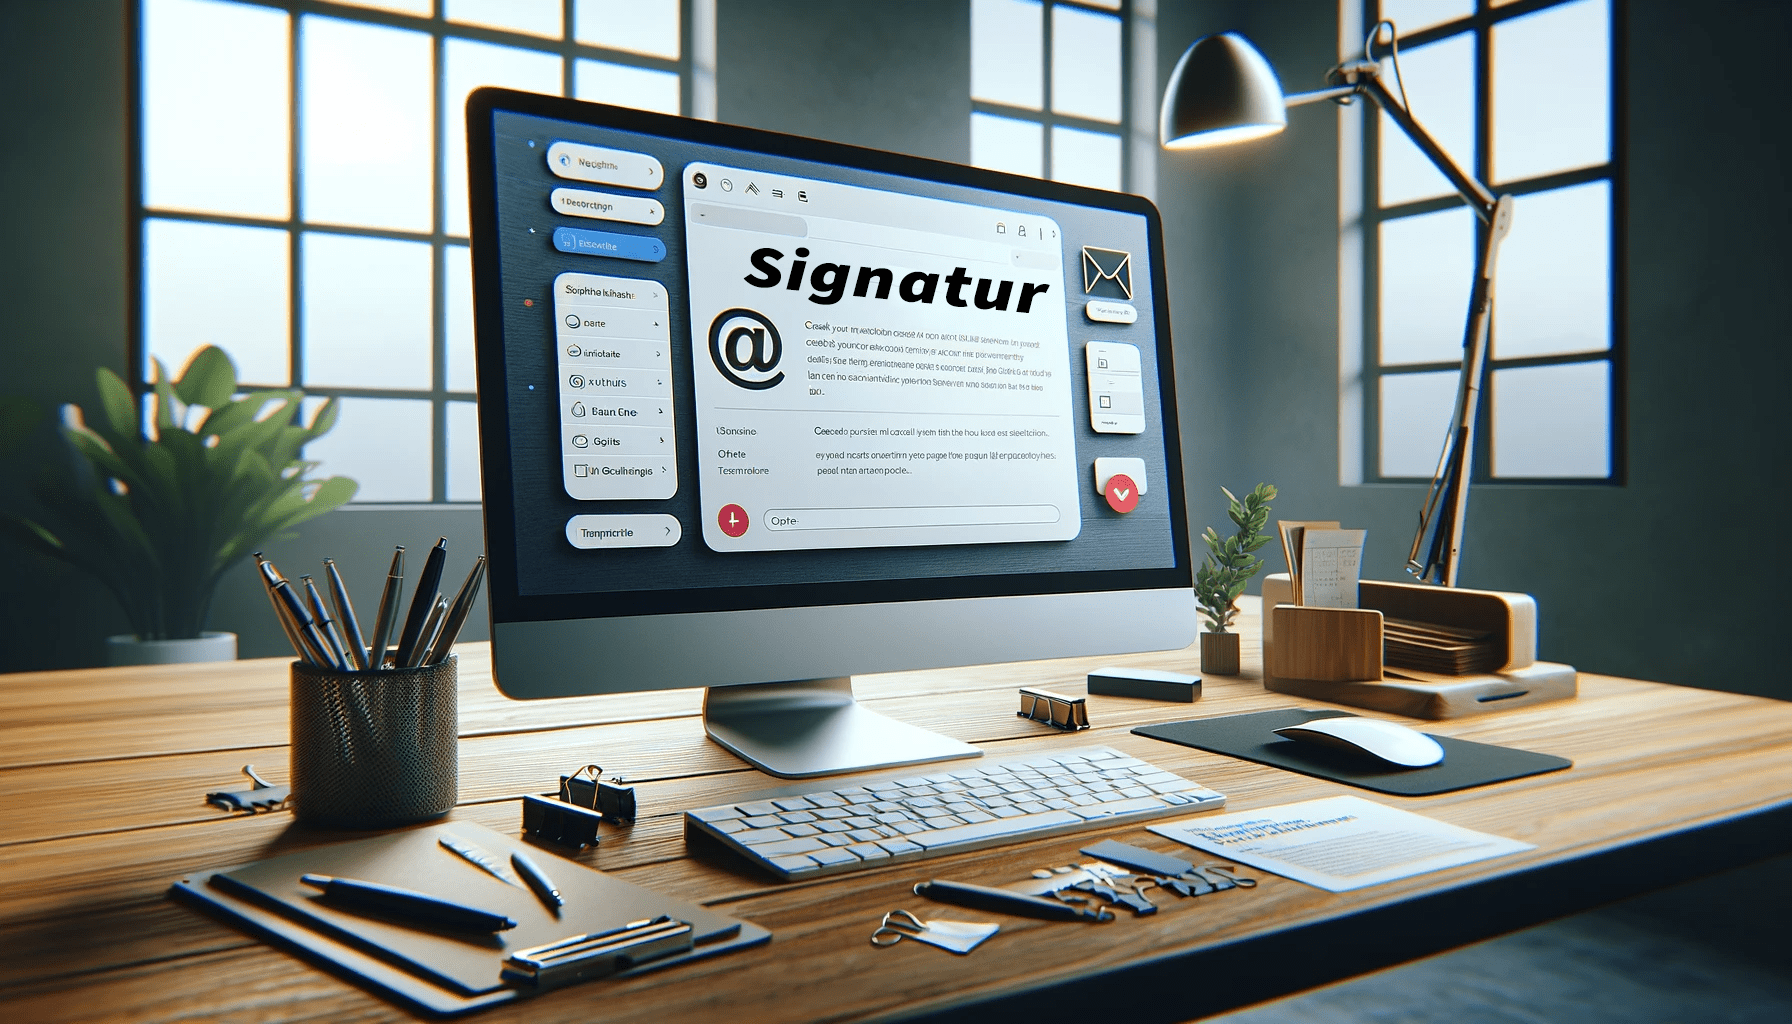 Deine E-Mail-Signatur erstellen, nutzen und verwenden inkl. Signaturvorlage. Wie werde ich im Internet sichtbar?!: Starte mit Social Media für Erfolg durch deinen Online Auftritt und mehr Sichtbarkeit